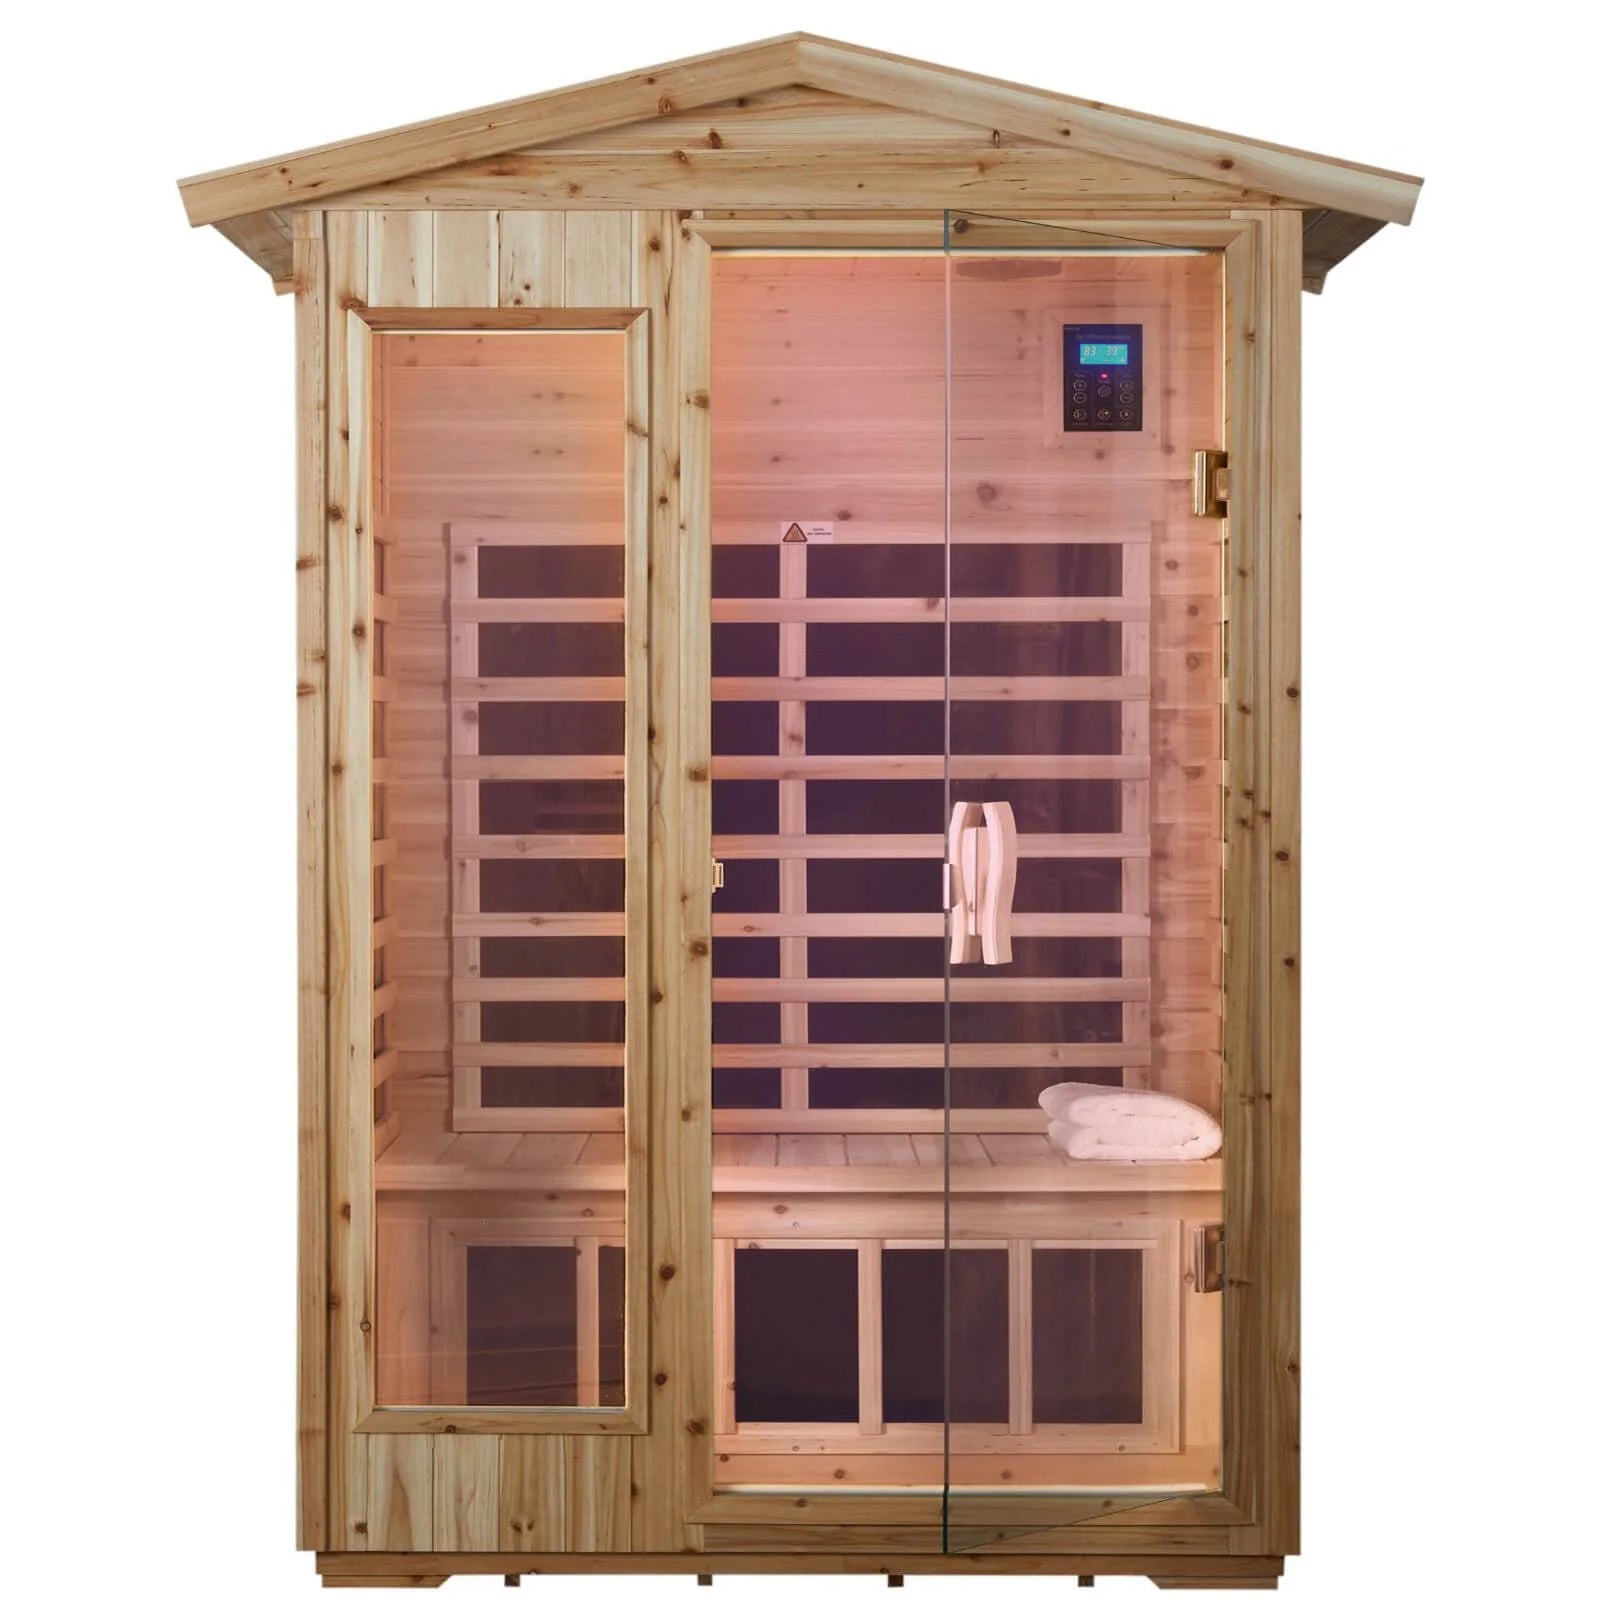 Garner-902VS 2 Person Outdoor Infrared Sauna